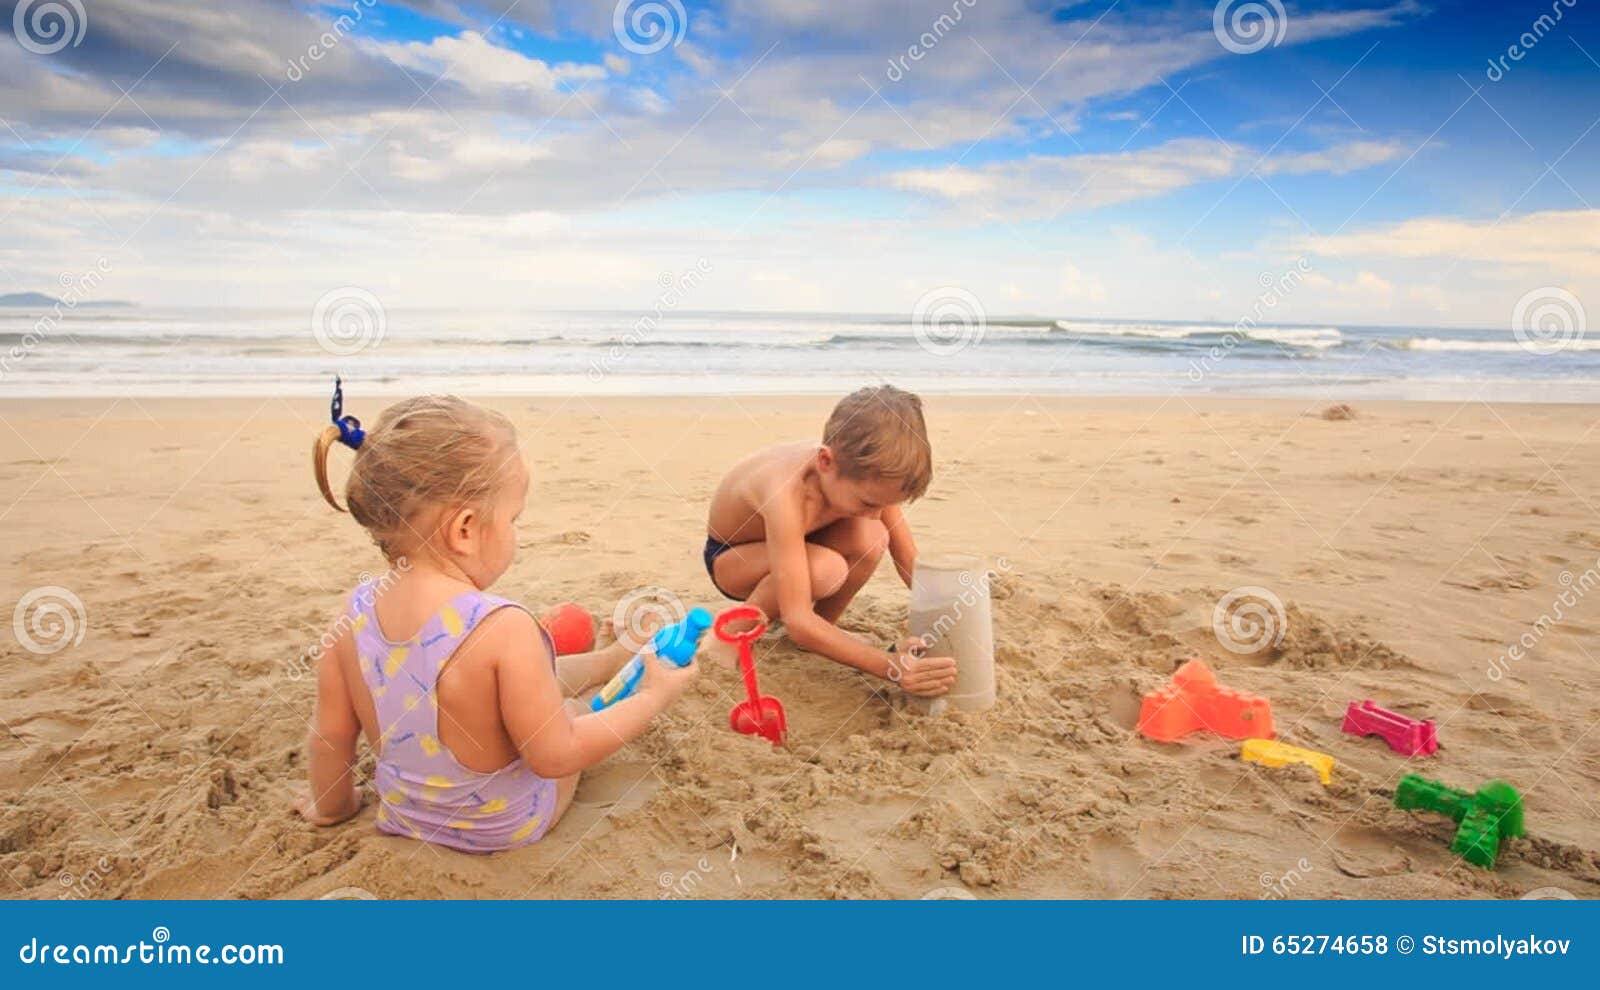 порно маленькие мальчики пляж фото 79